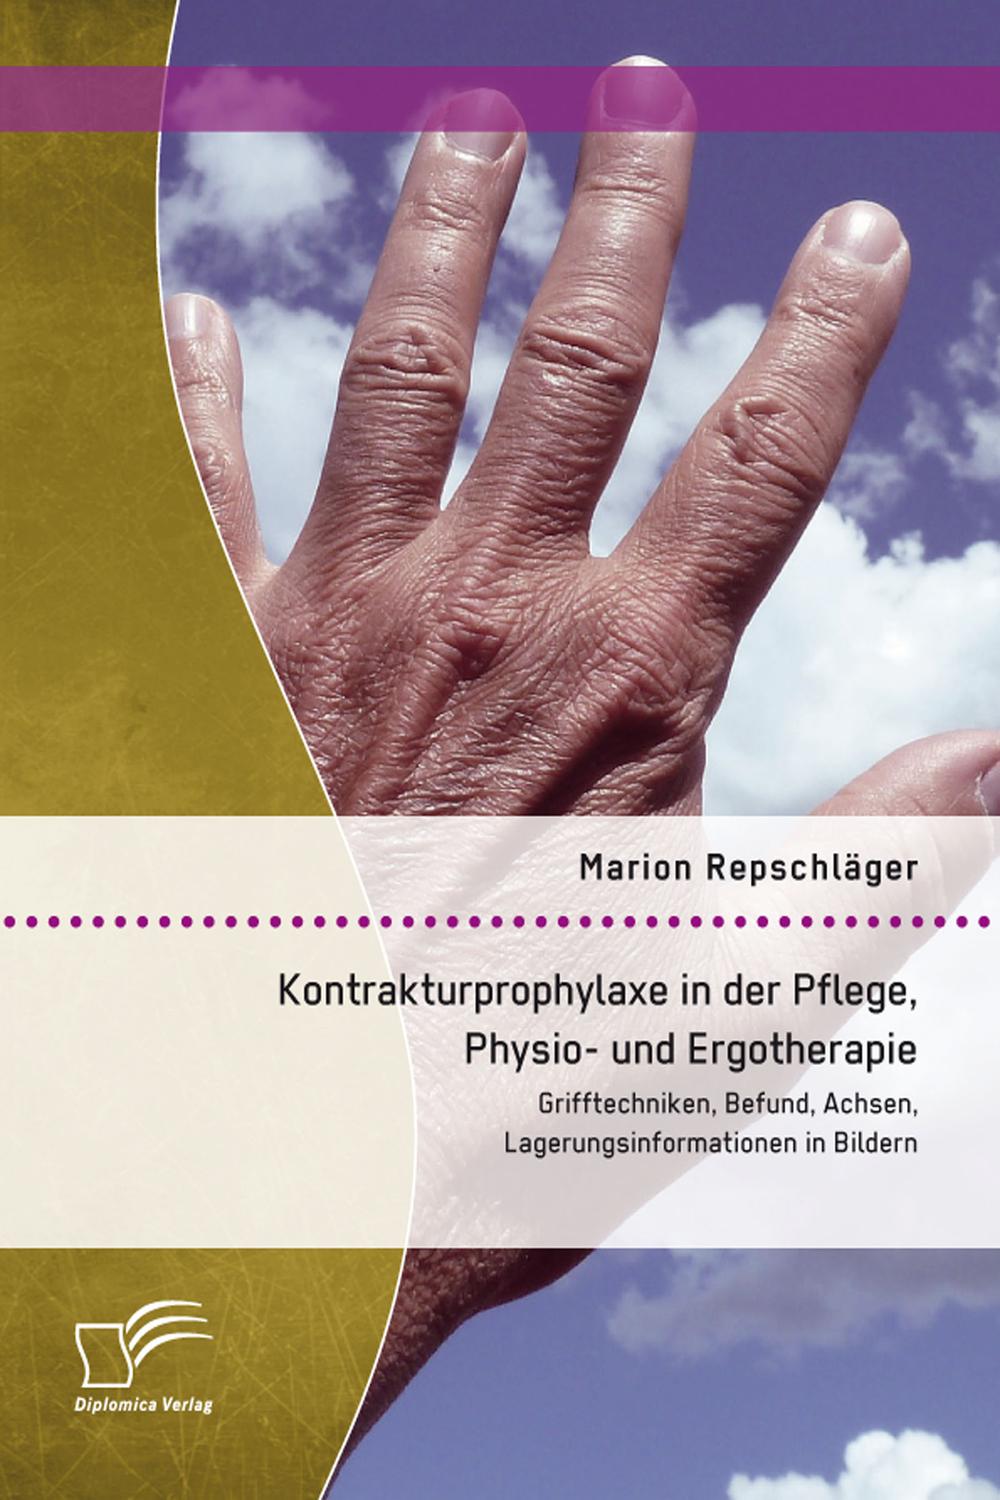 Kontrakturprophylaxe in der Pflege, Physio- und Ergotherapie: Grifftechniken, Befund, Achsen, Lagerungsinformationen in Bildern - Marion Repschläger